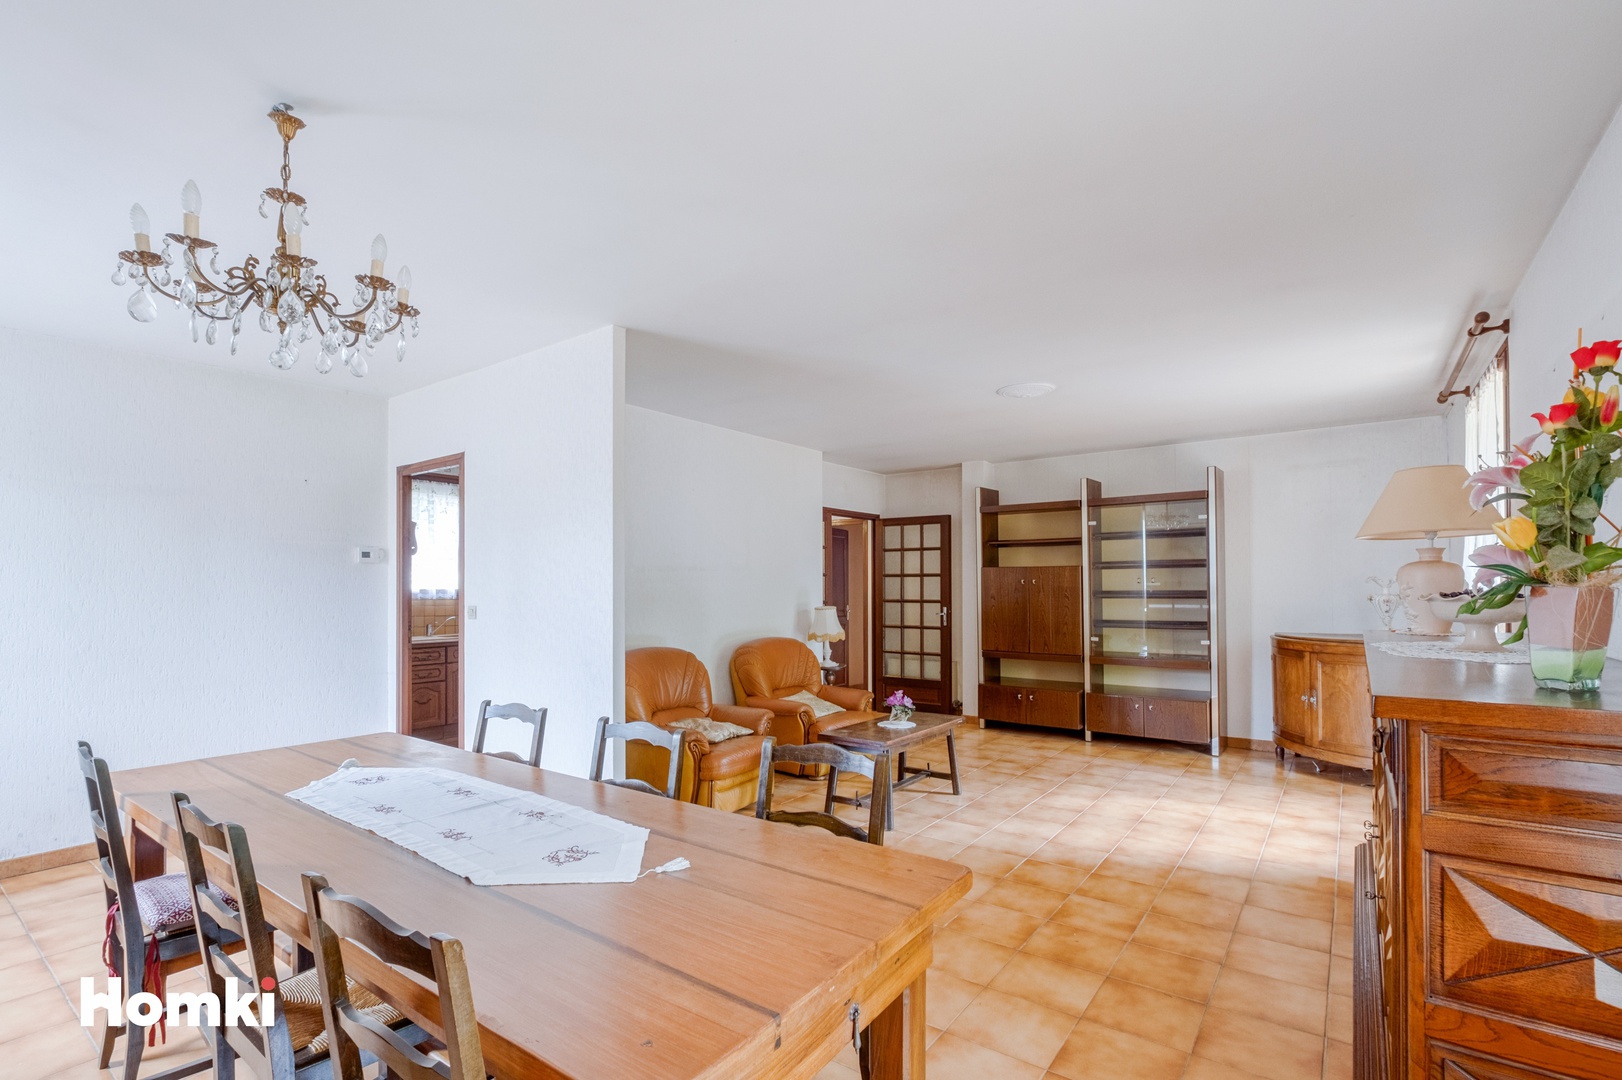 Homki - Vente Maison/villa  de 113.0 m² à Beauzelle 31700